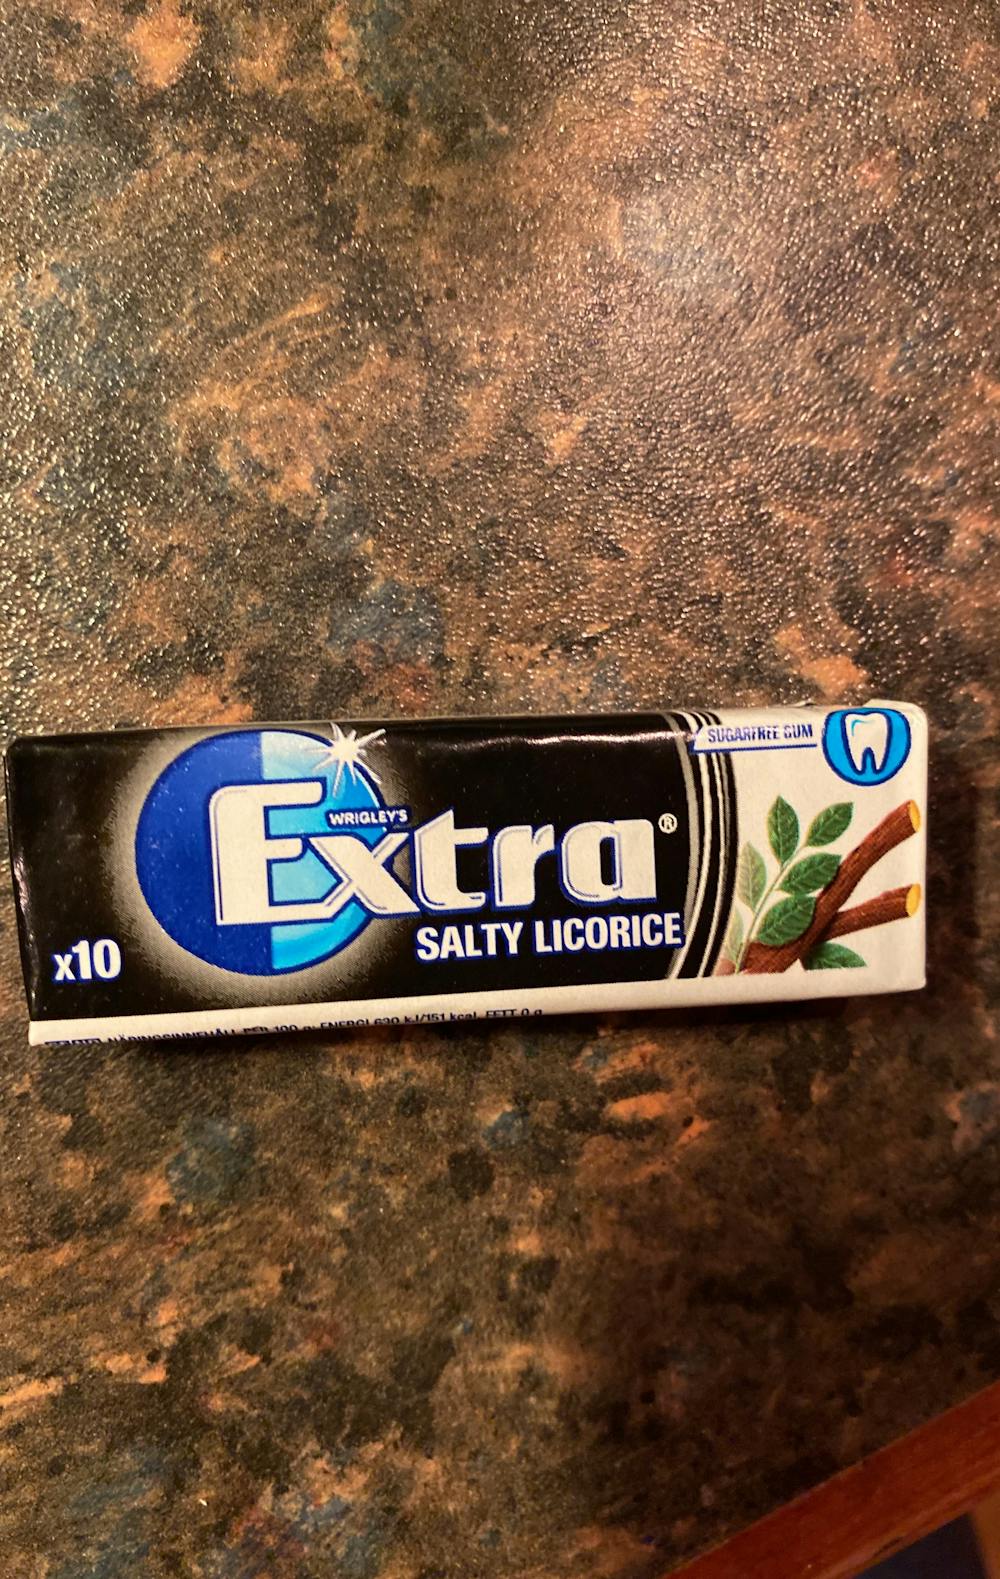 Extra salty licorice, Extra